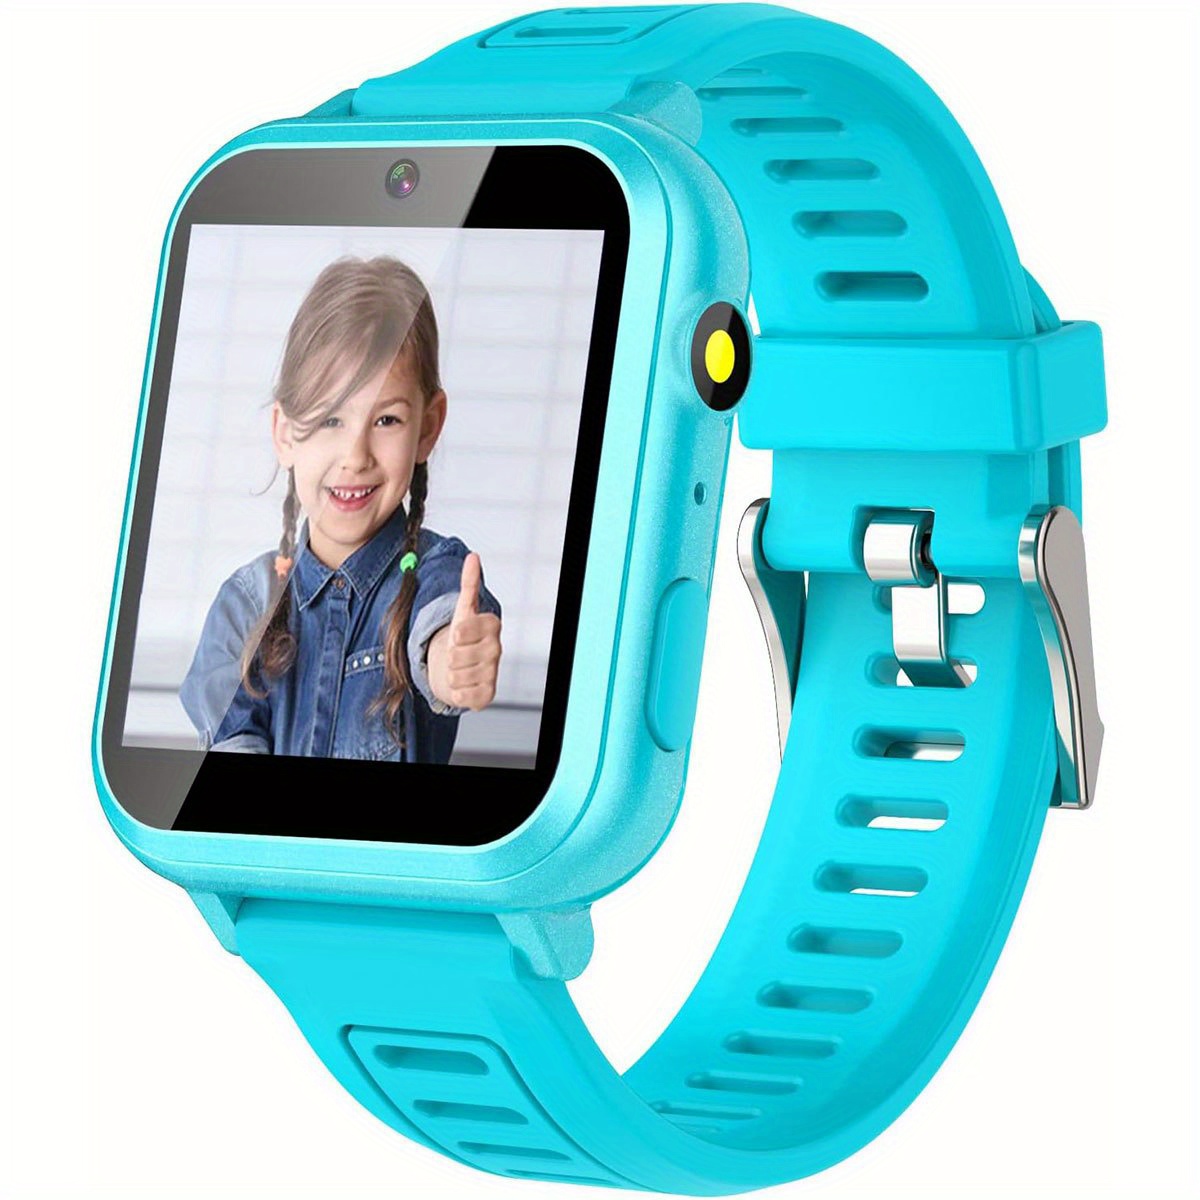  Sedzofan Reloj inteligente para niños, regalo para niñas de 6 a  12 años, 24 juegos de rompecabezas, pantalla táctil HD, relojes para niños  con MP3, música, podómetro, linterna de 12/24 horas